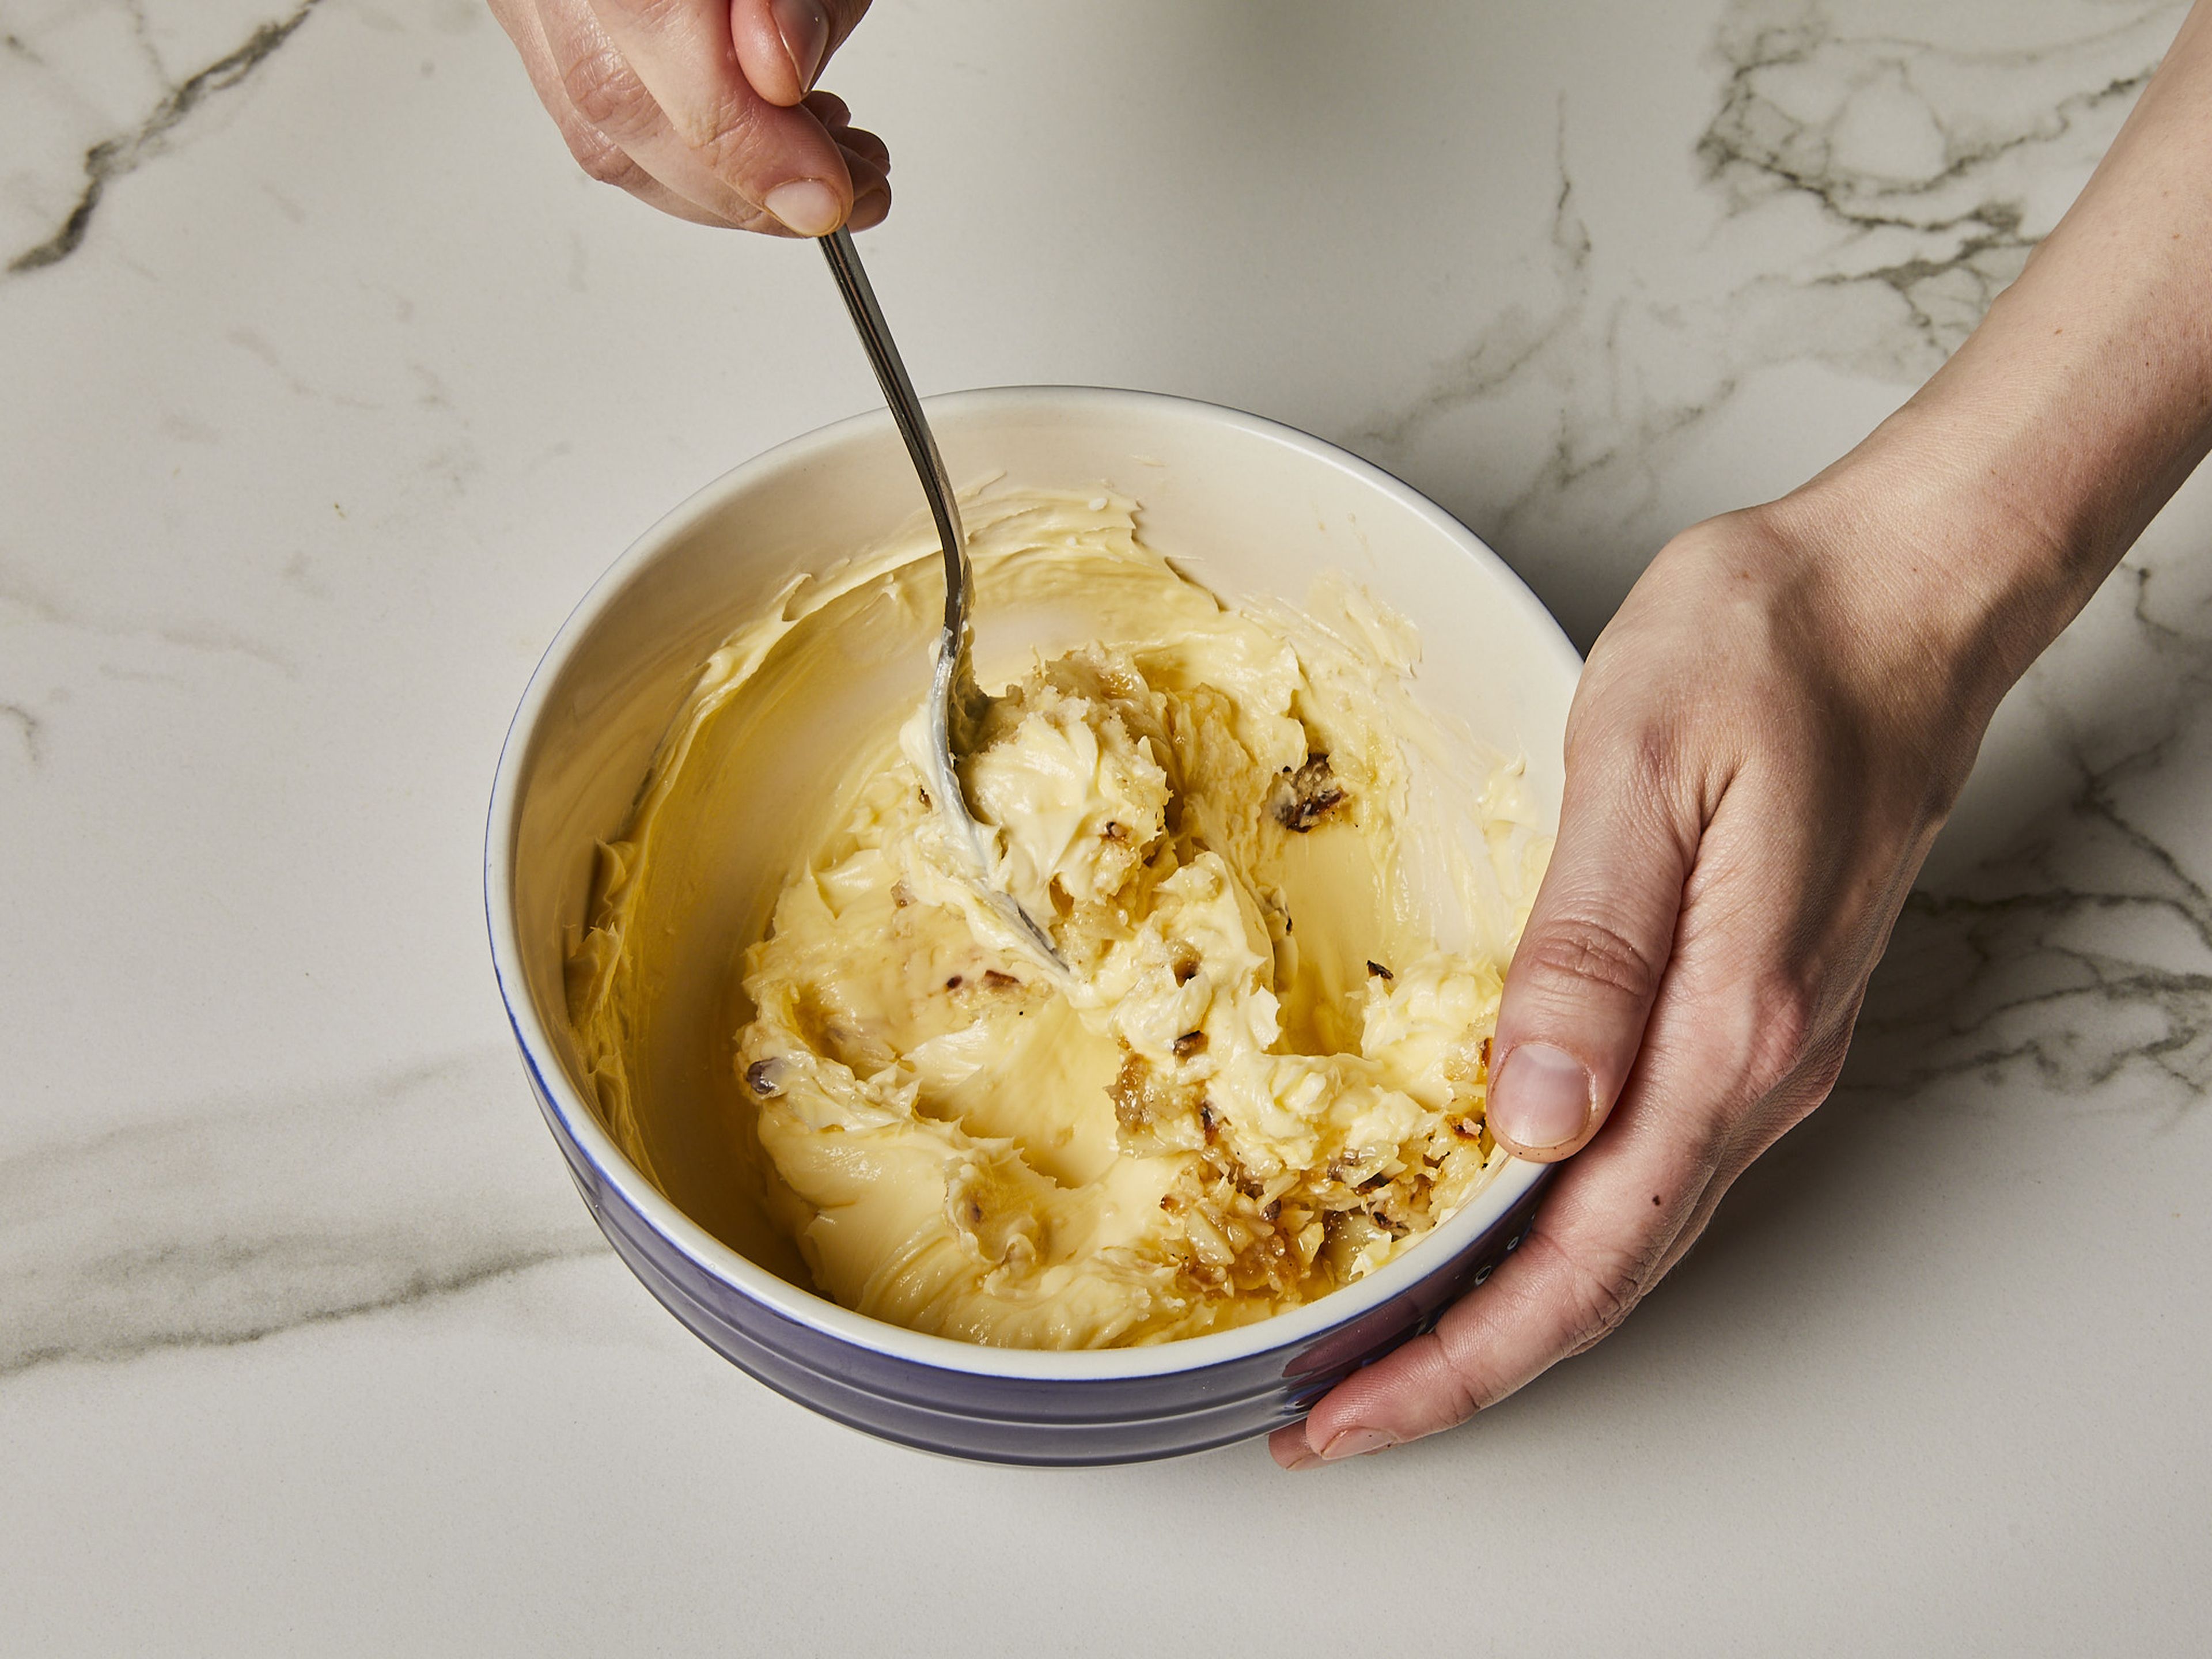 Die Knoblauchzehen vorsichtig auspressen und in einer kleinen Schüssel mit der zimmerwarmen Butter vermischen. Mit Salz und Pfeffer abschmecken und mit dem Grillgemüse servieren.